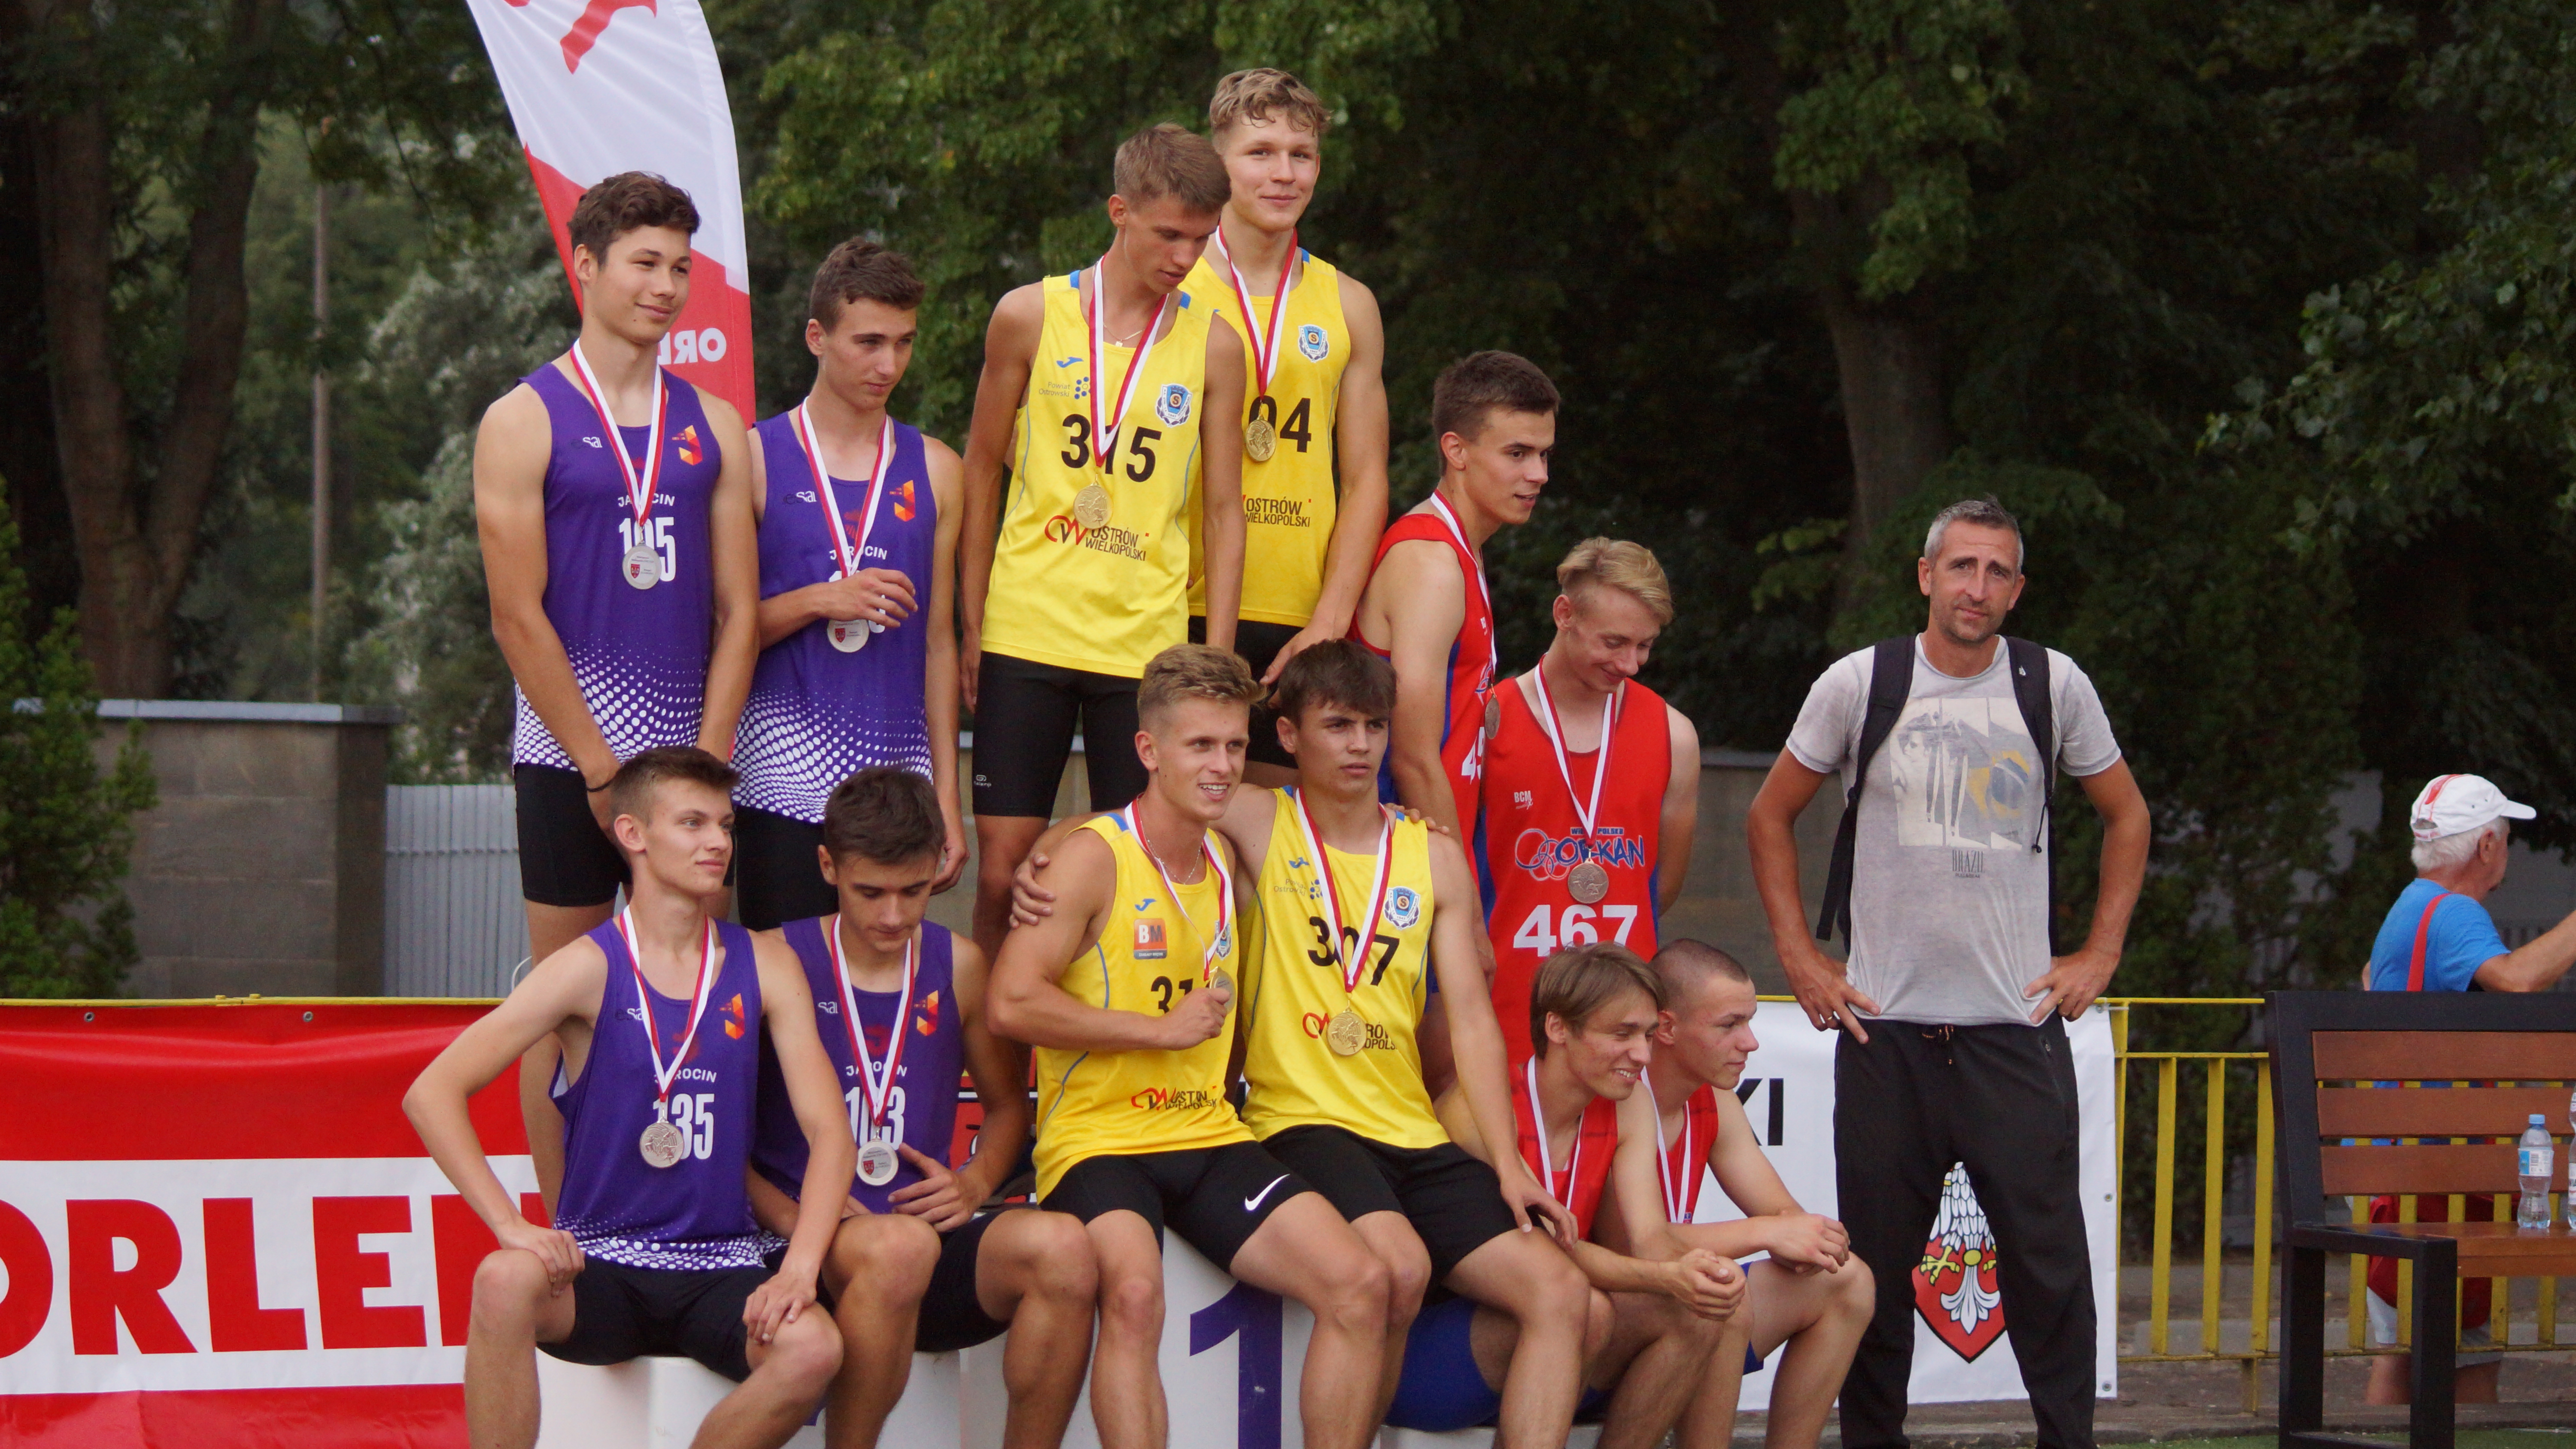 STAL LA najlepszym zespołem Mistrzostw Wielkopolski w Lekkiej Atletyce – 23 medale juniorów i Juniorów Młodszych